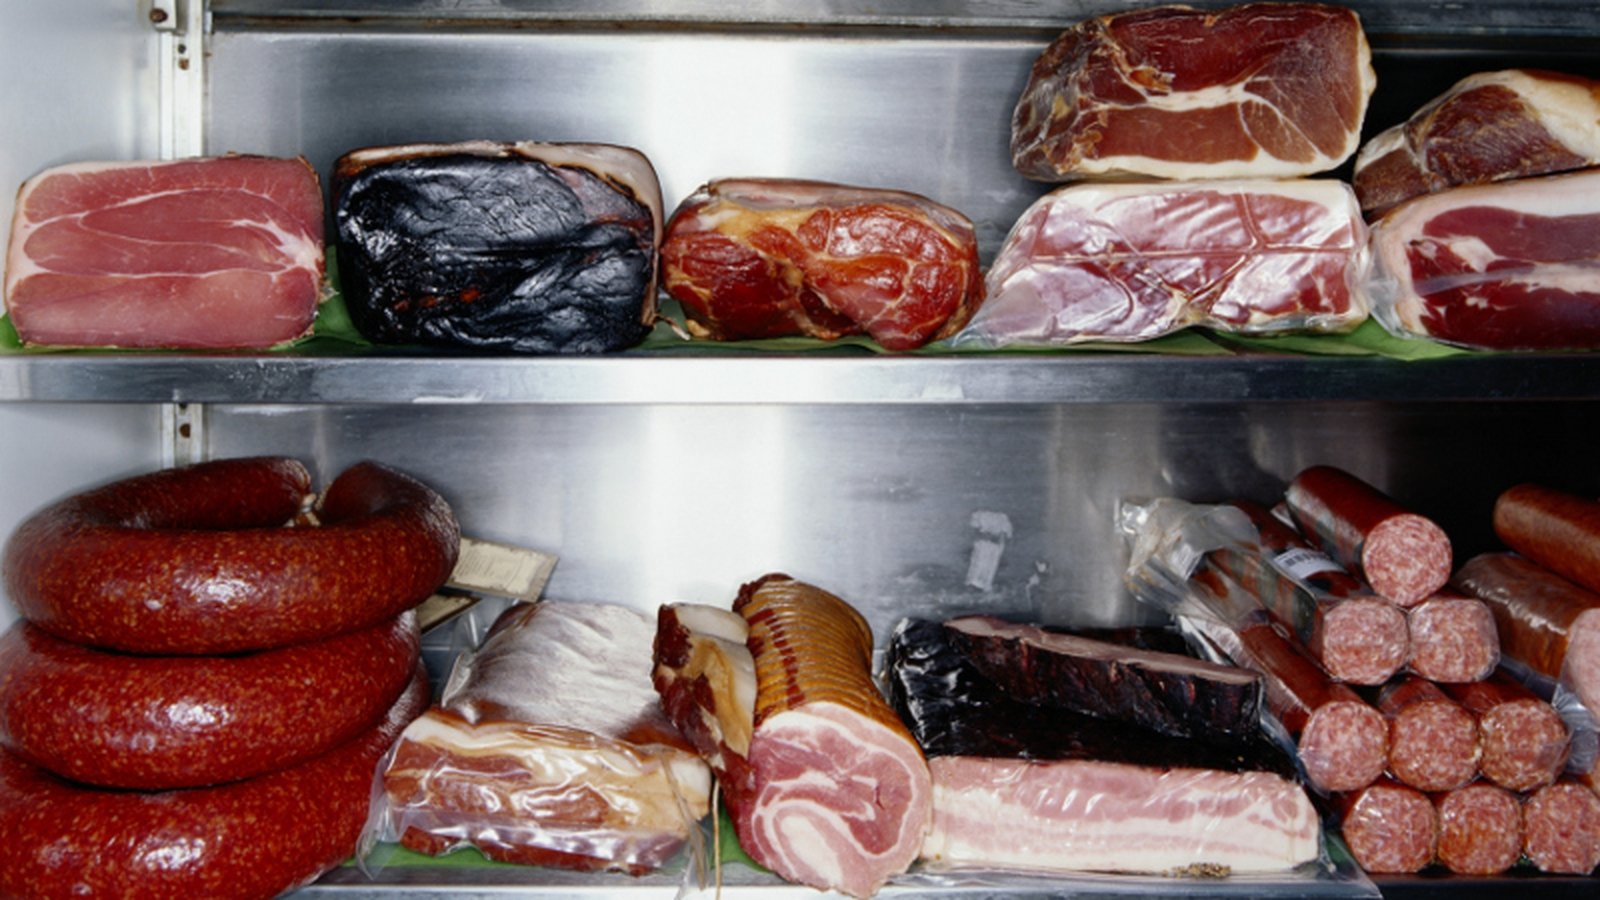 В холодильнике есть мясо. Жолодильник для хранения мясо. Колбаса в холодильнике. Холодильник полный колбасы. Холодильник полный мяса.